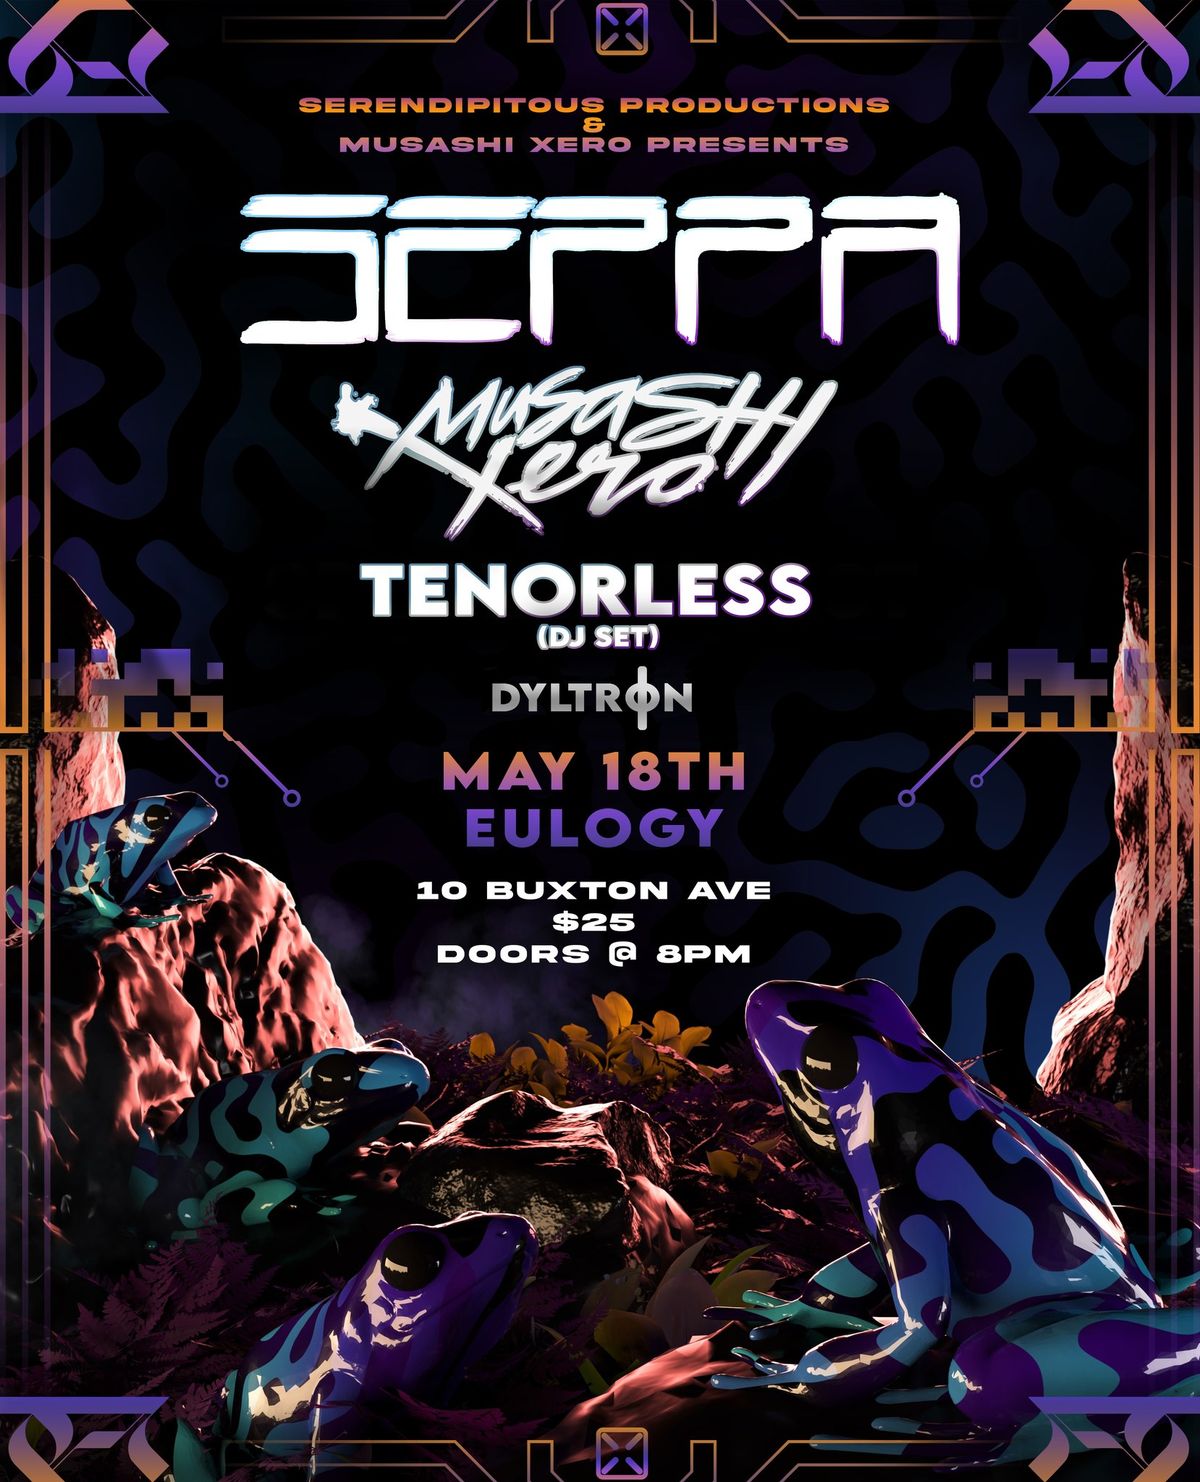 Seppa, Musashi Xero, Tenorless (DJ Set), & Dyltr0n @ Eulogy